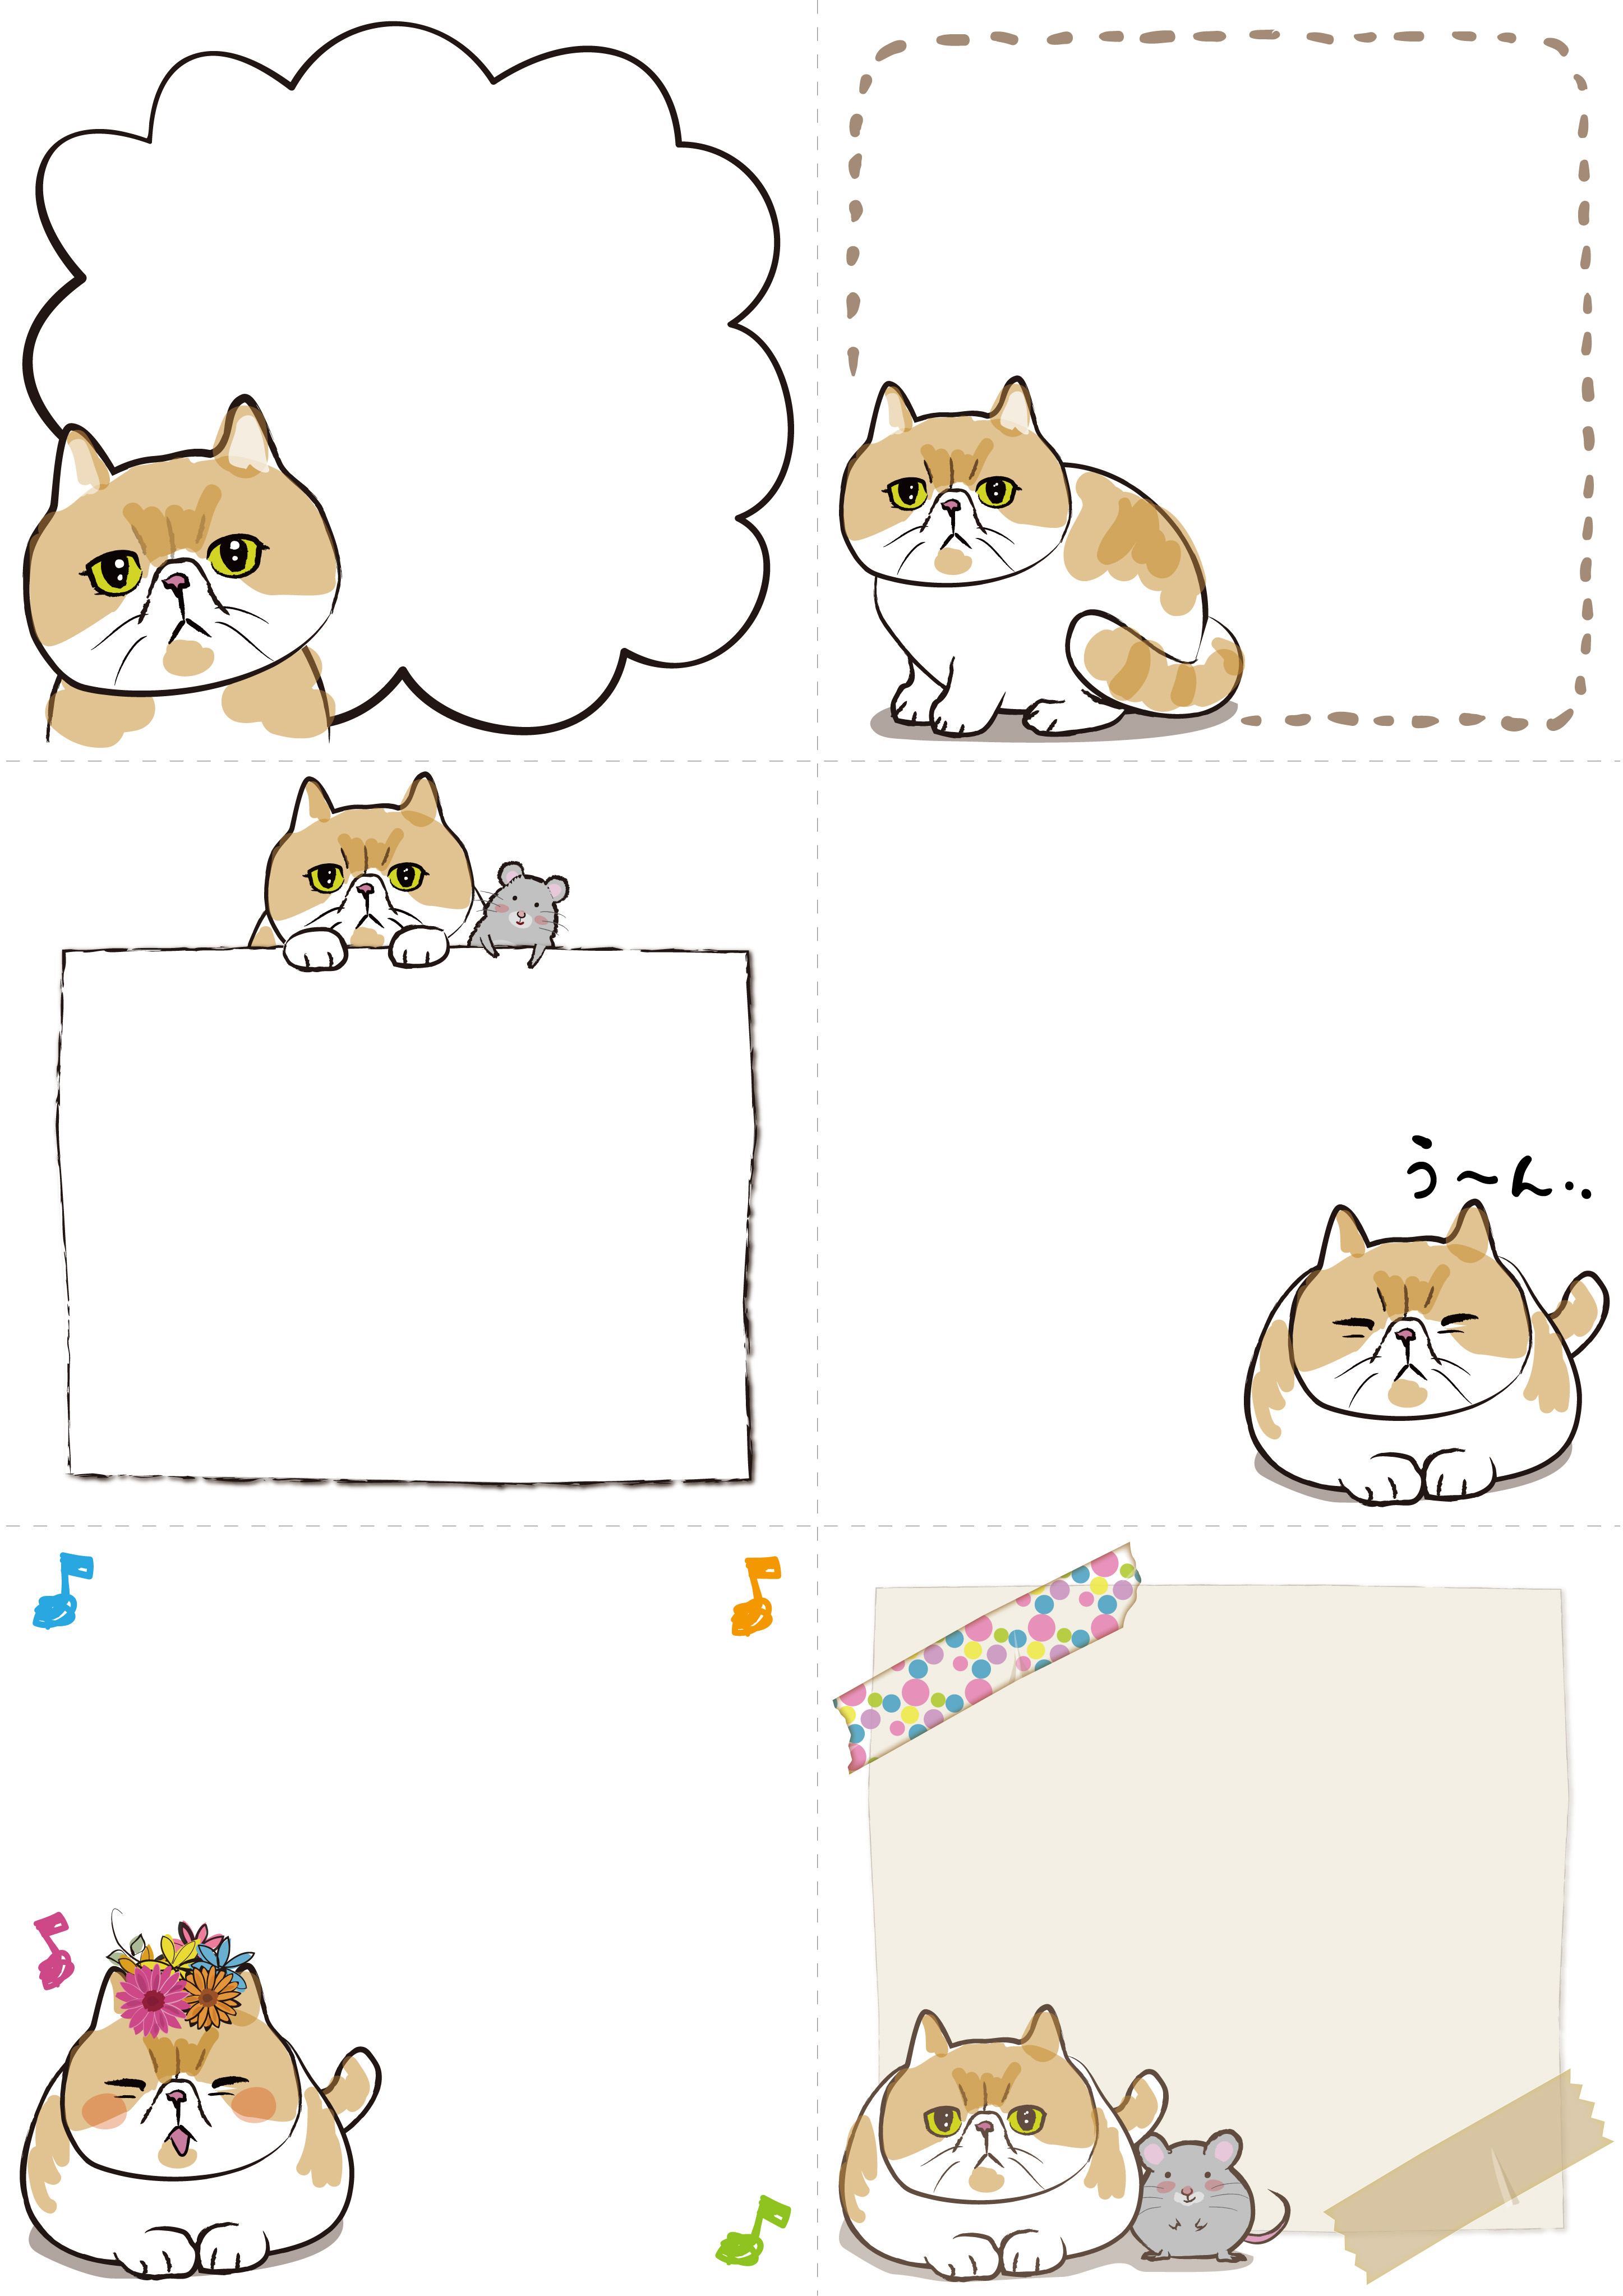 メモ用紙のテンプレート 猫エキゾチック サイズ6等分 ダウンロード かわいい無料イラスト 印刷素材 Net